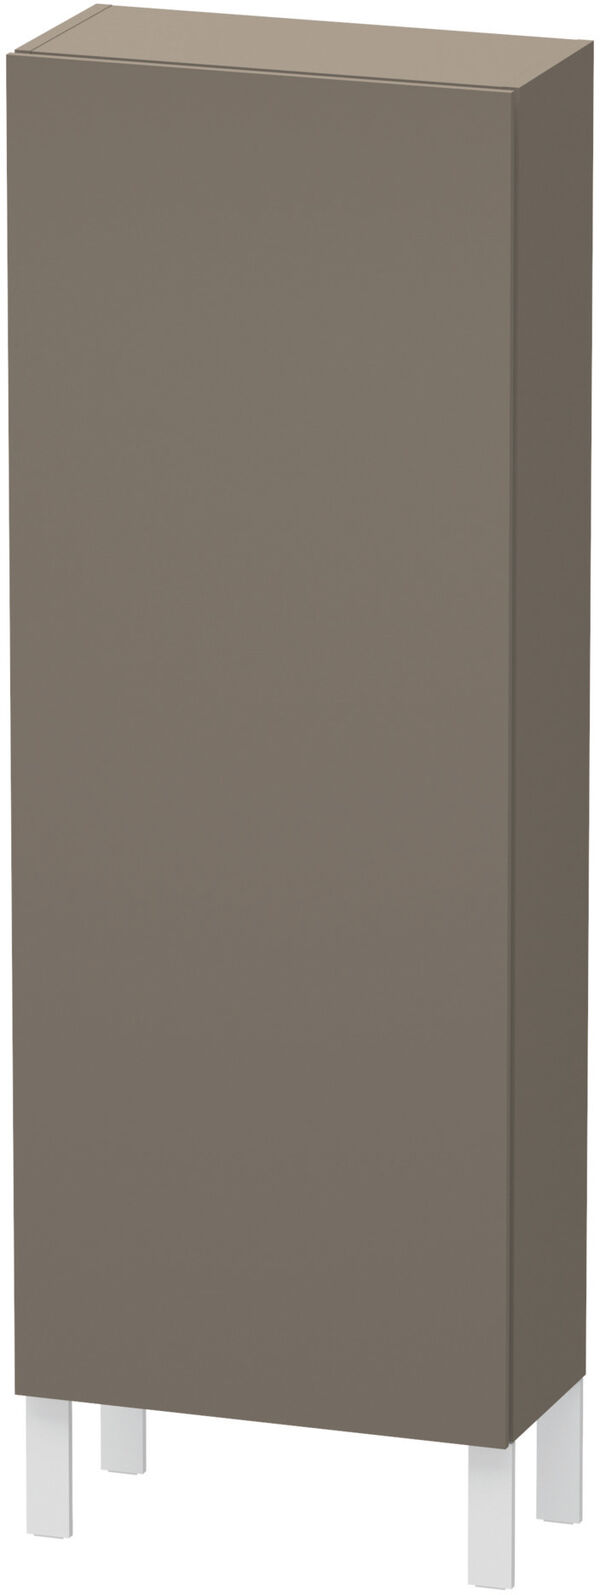 Armadietto laterale L-Cube l:50 cm, a:132 cm, p:24,3 cm 1 porta, cerniere a destra 3 ripiani in vetro image number 0